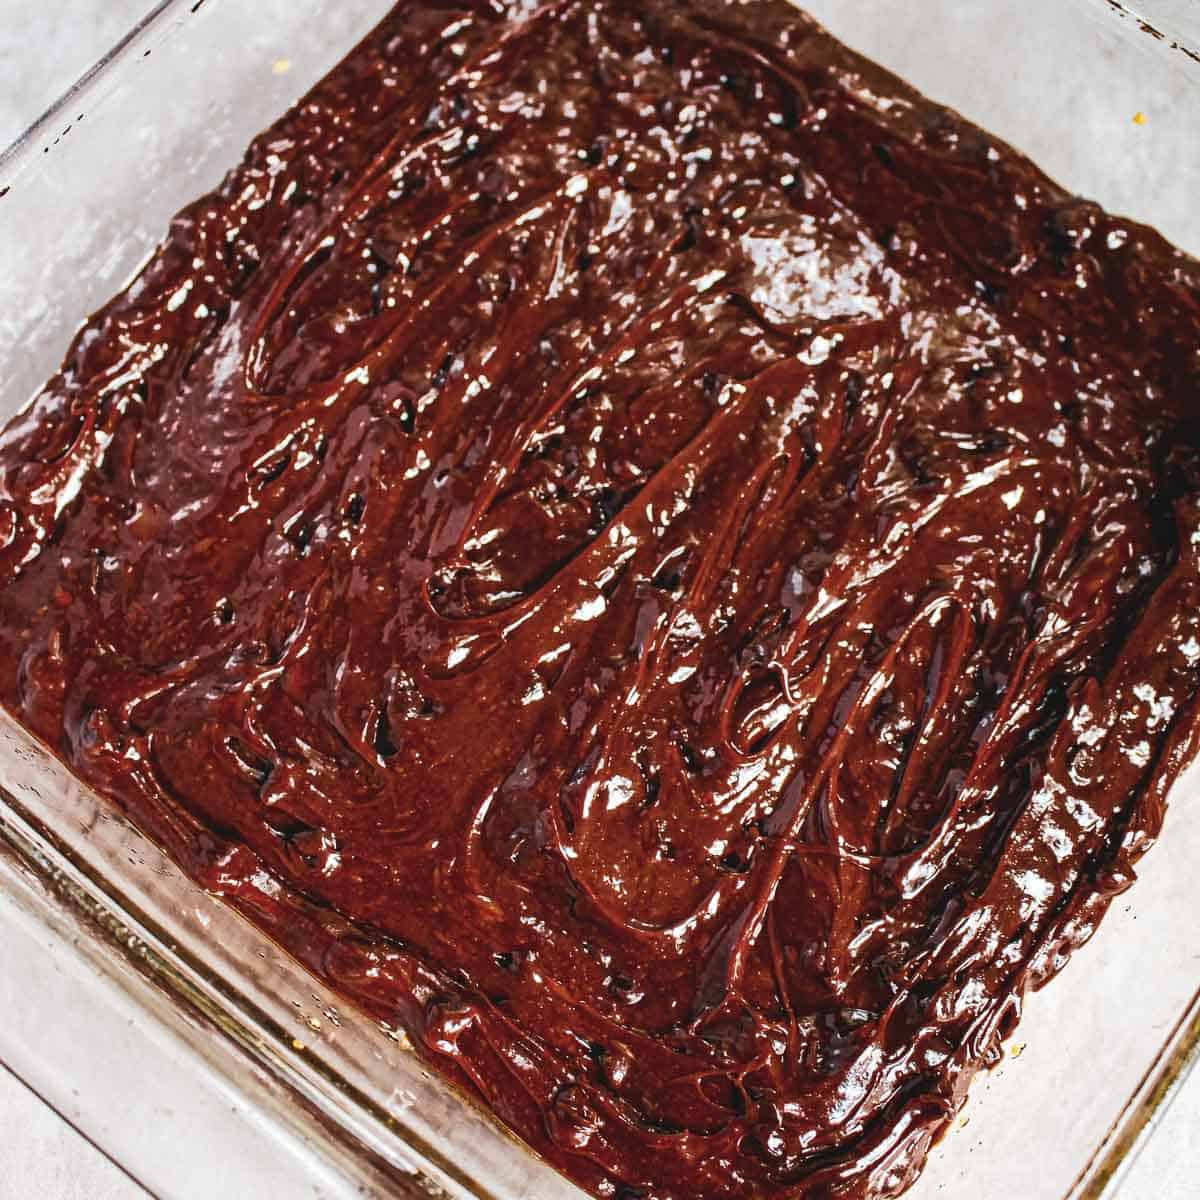 Brownie before being baked.